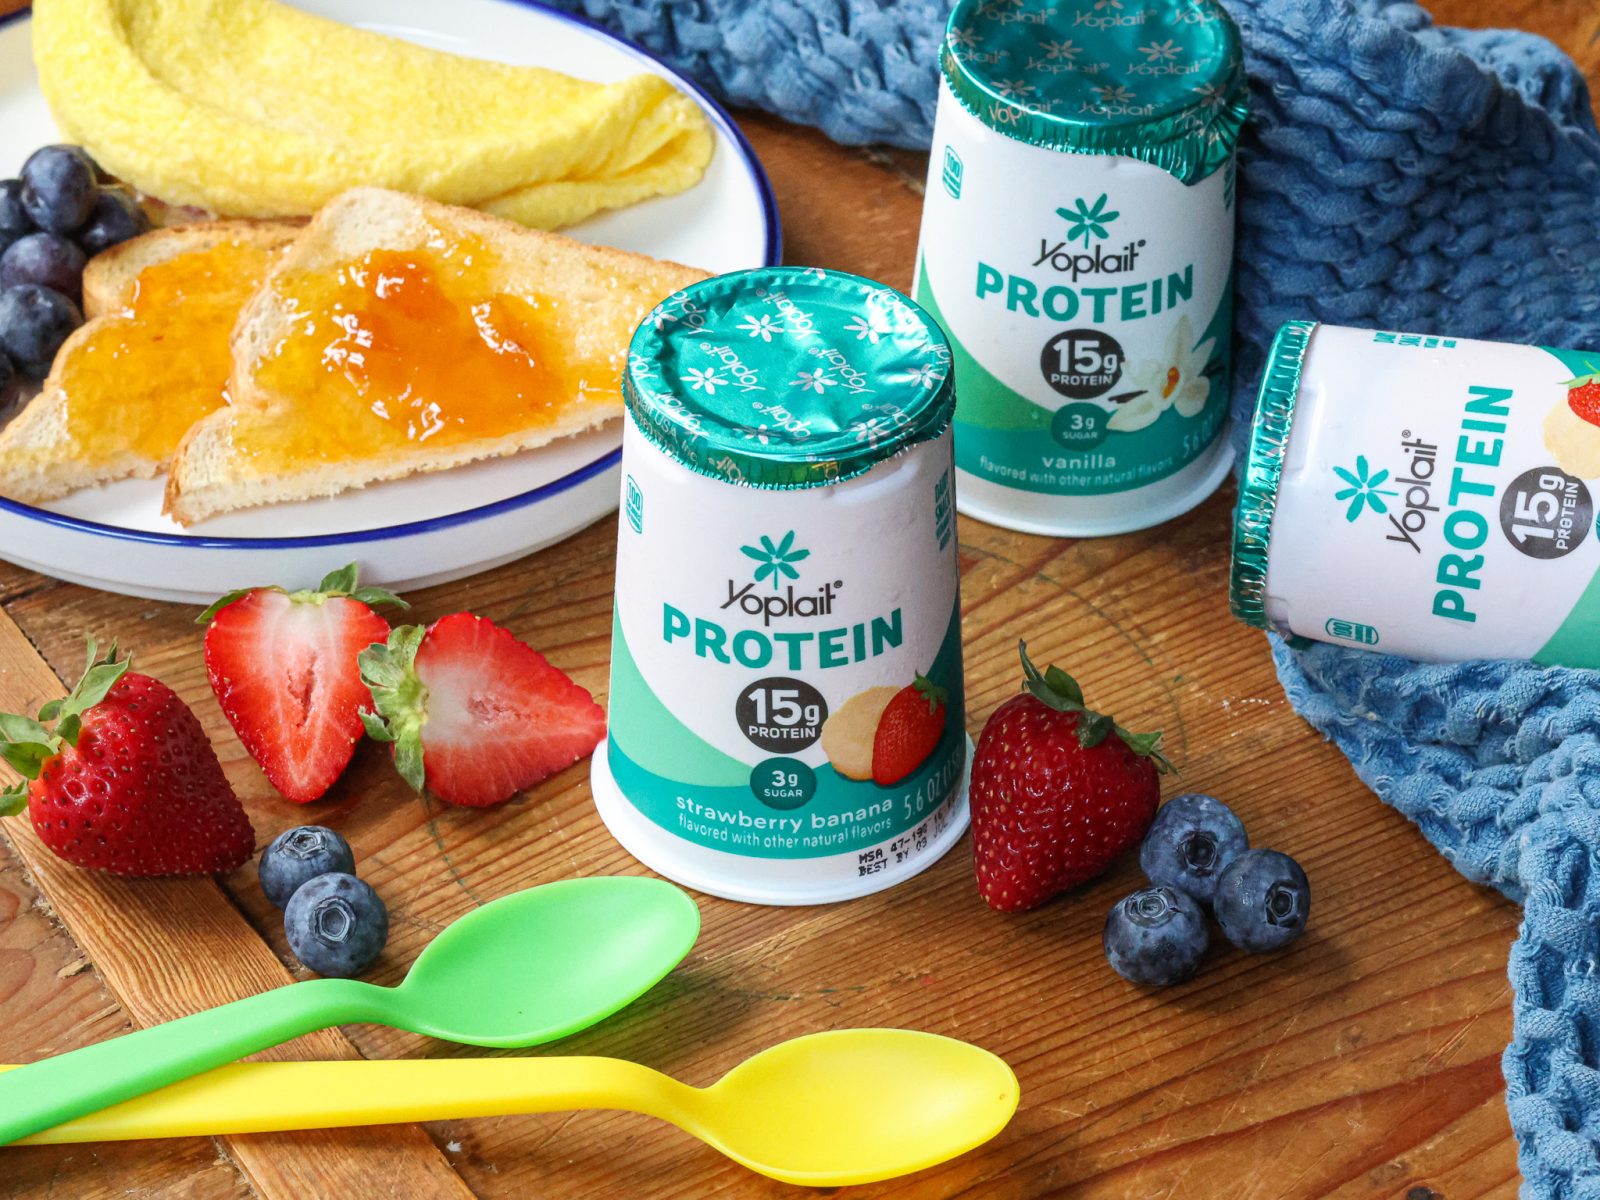 Grab Yoplait Protein Yogurt Cups As Low As 47¢ At Kroger